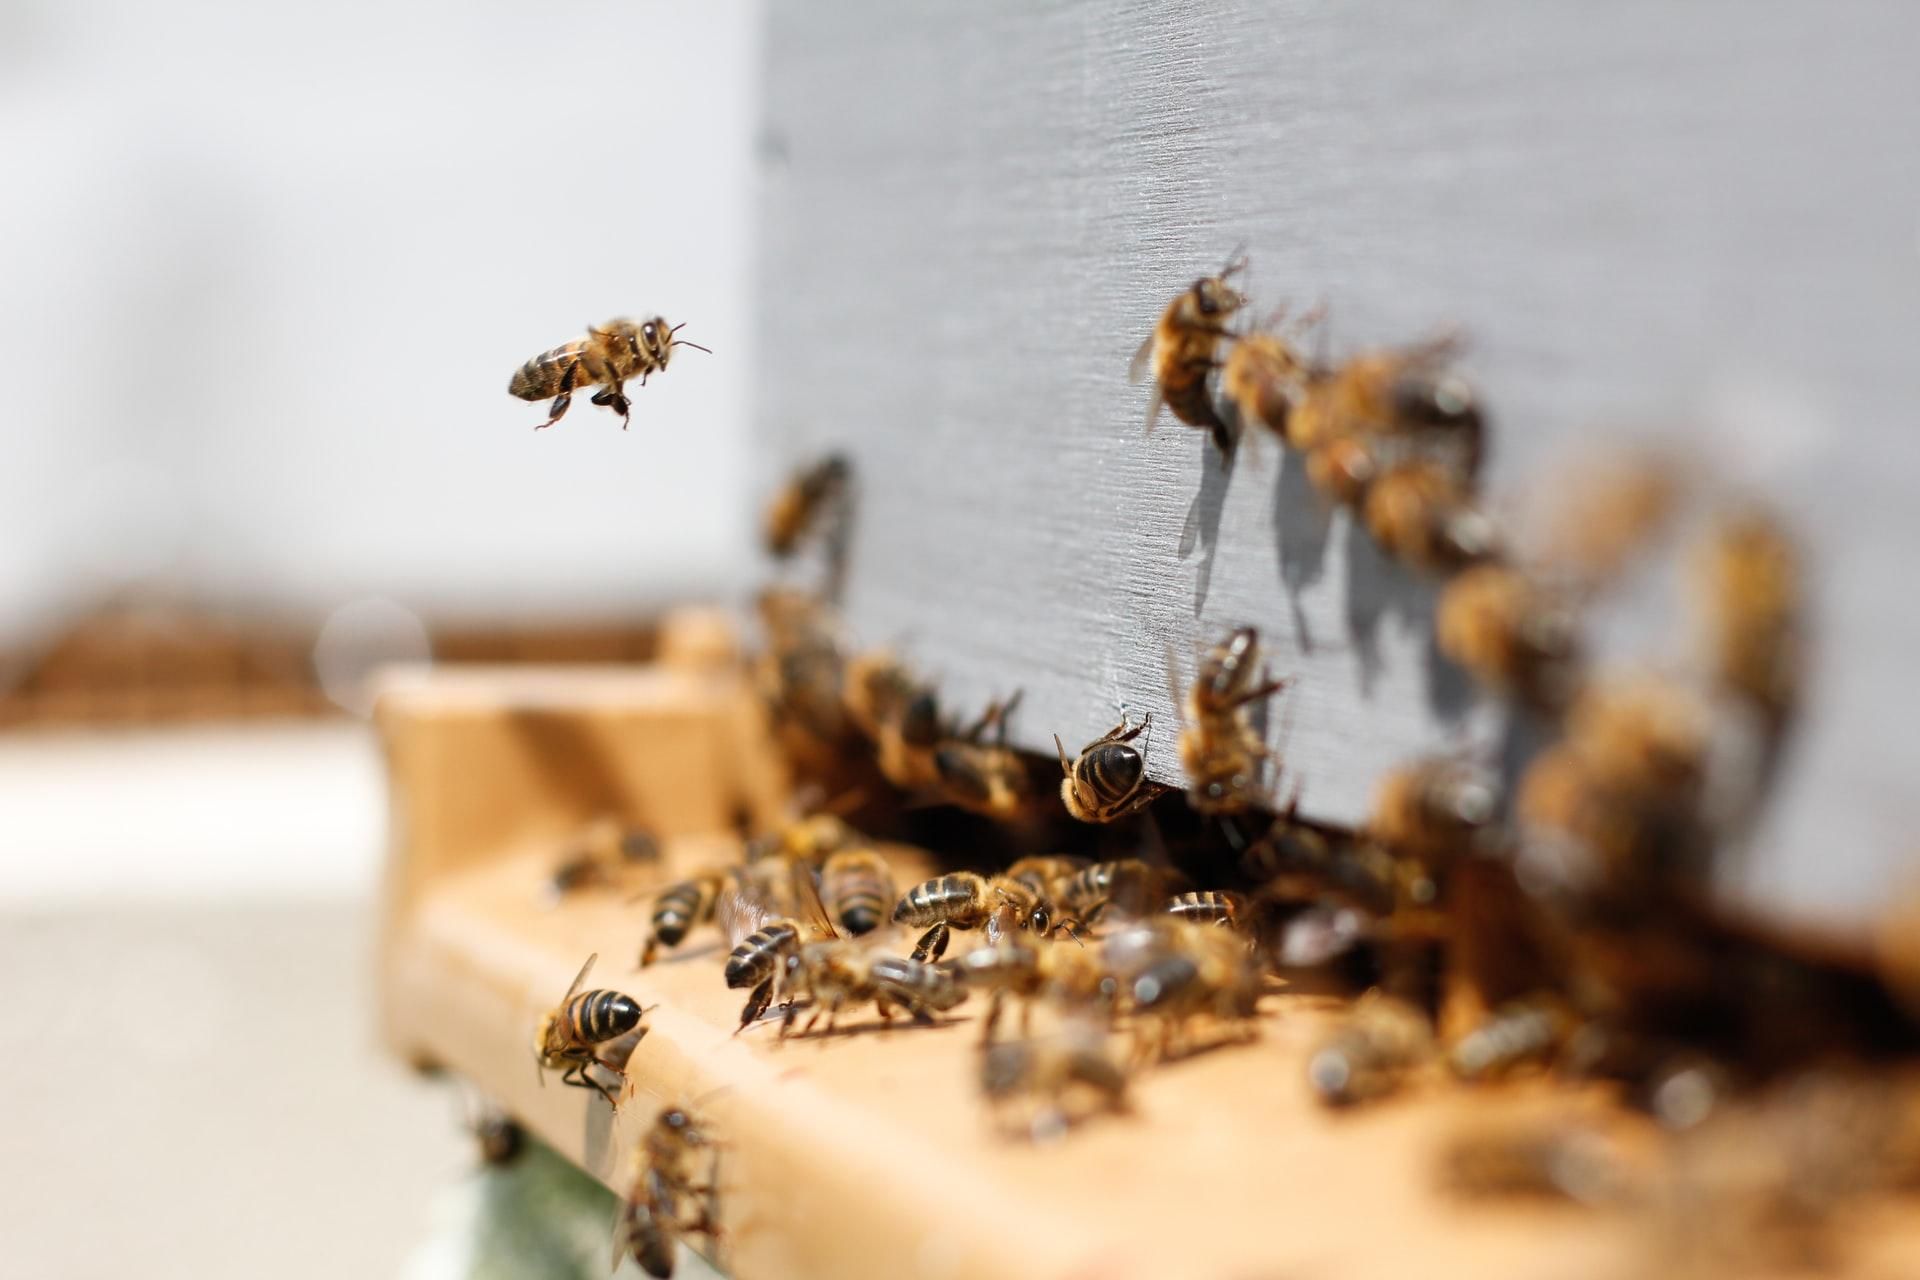 Можно ли вылечить какие-то болезни с помощью пчел